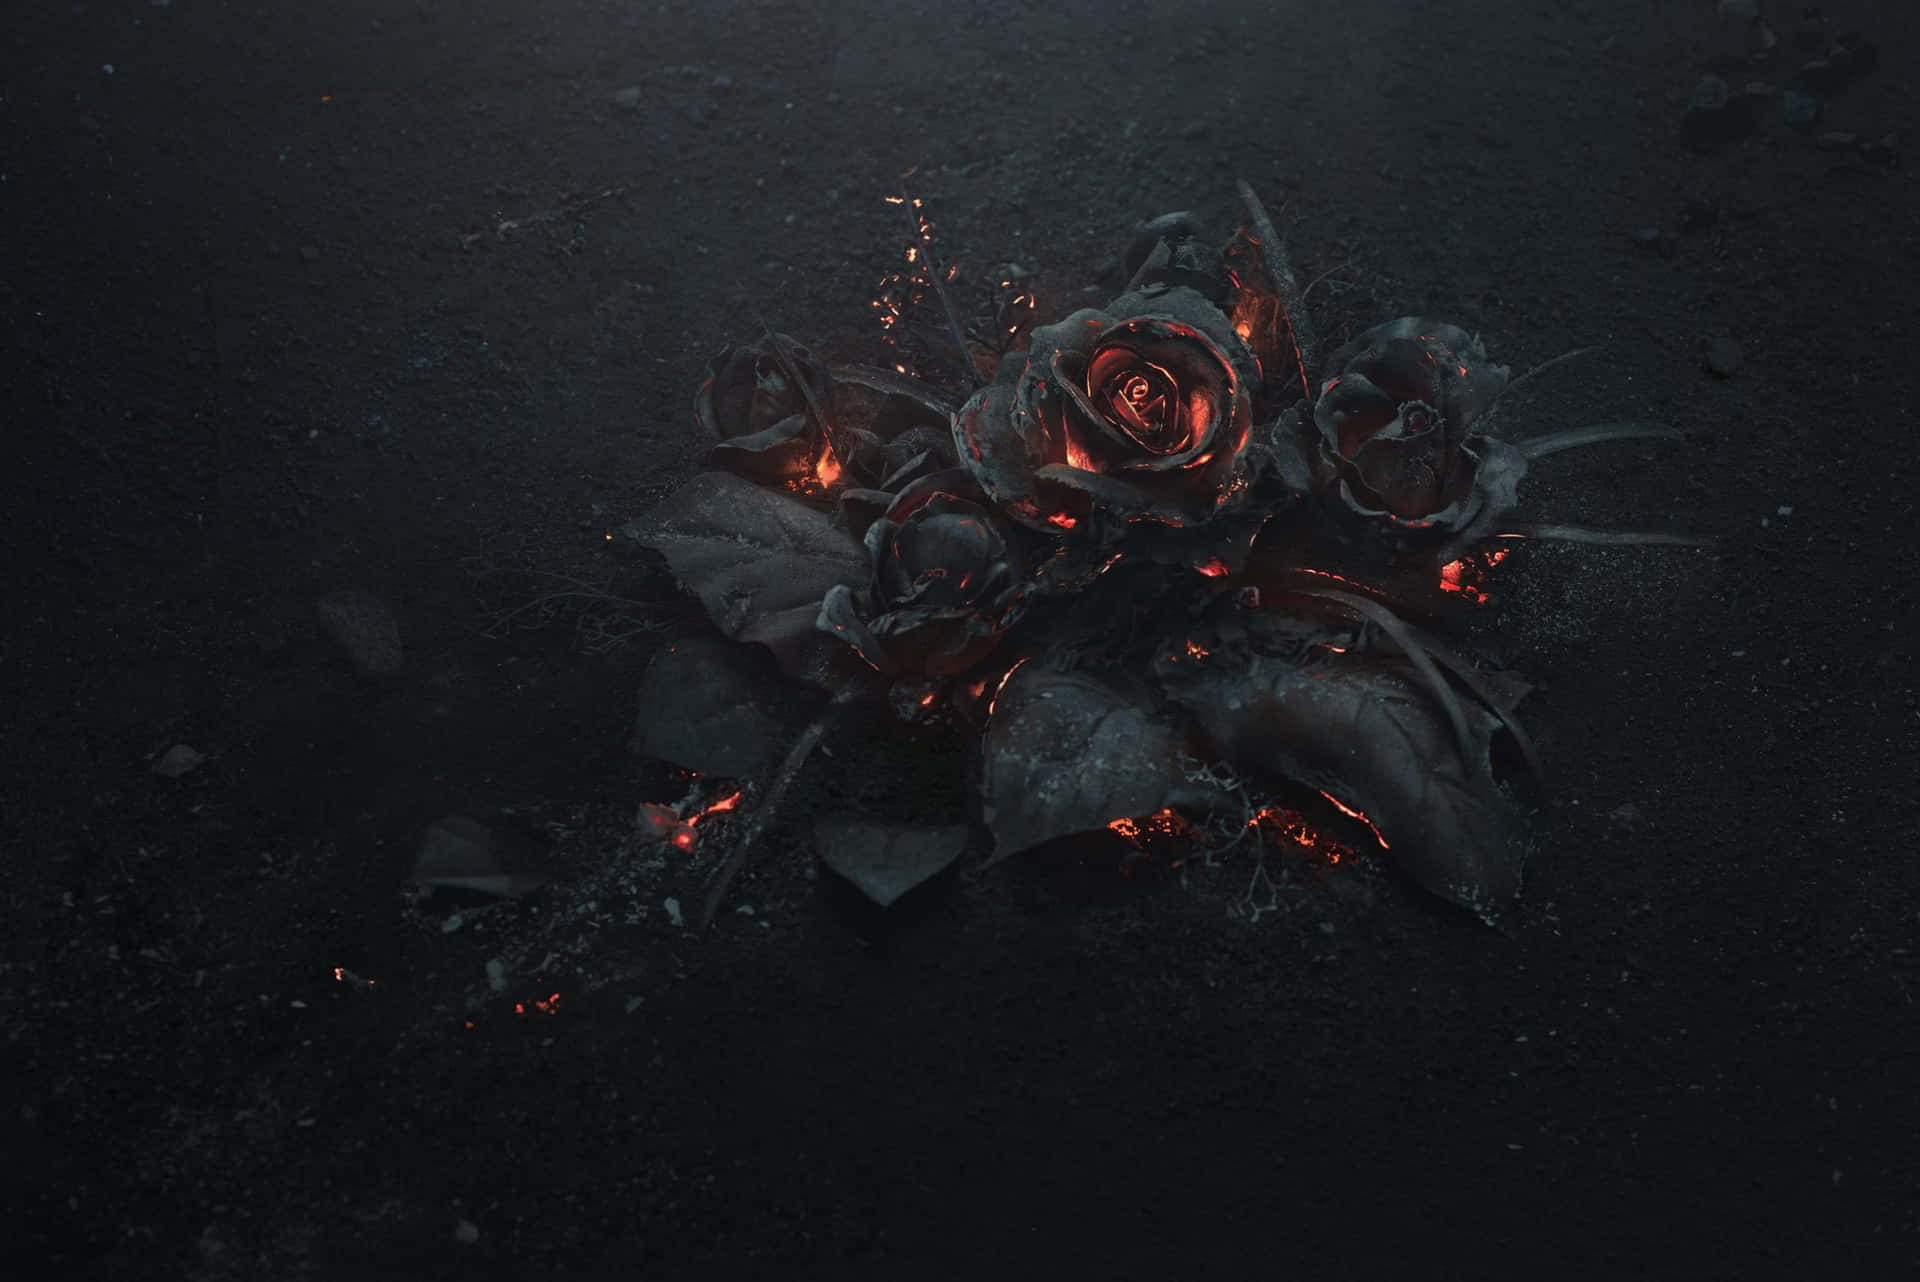 Eineschwarze Rose Mit Flammen Darauf Wallpaper